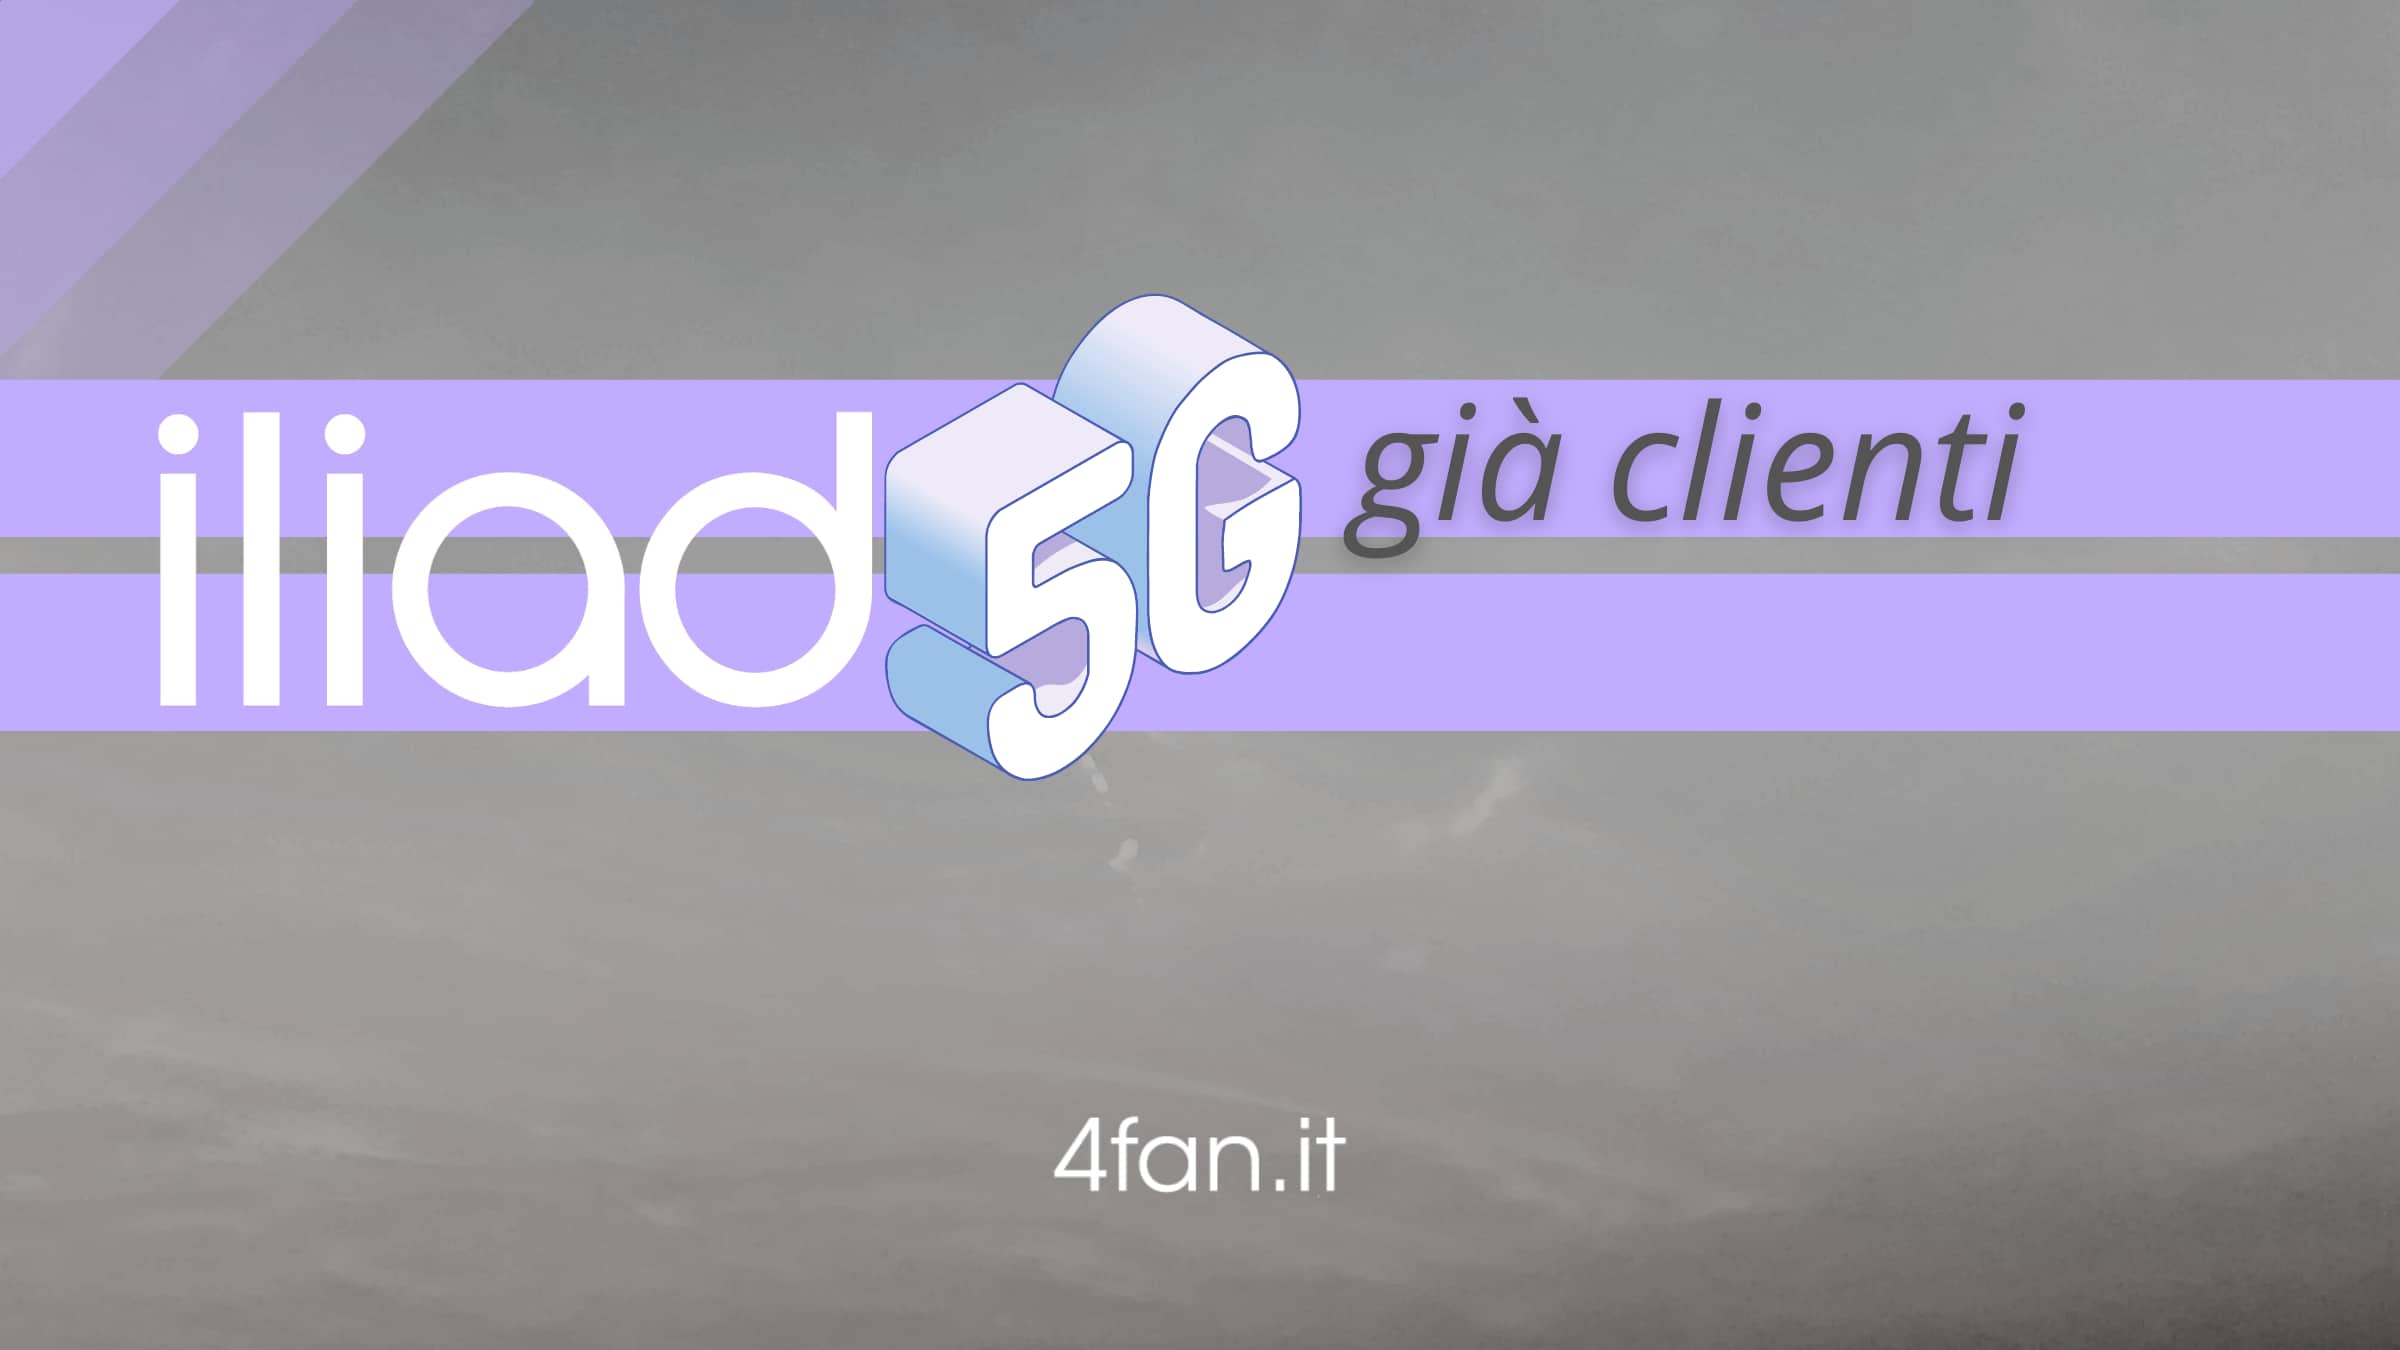 Iliad 5G per i già clienti